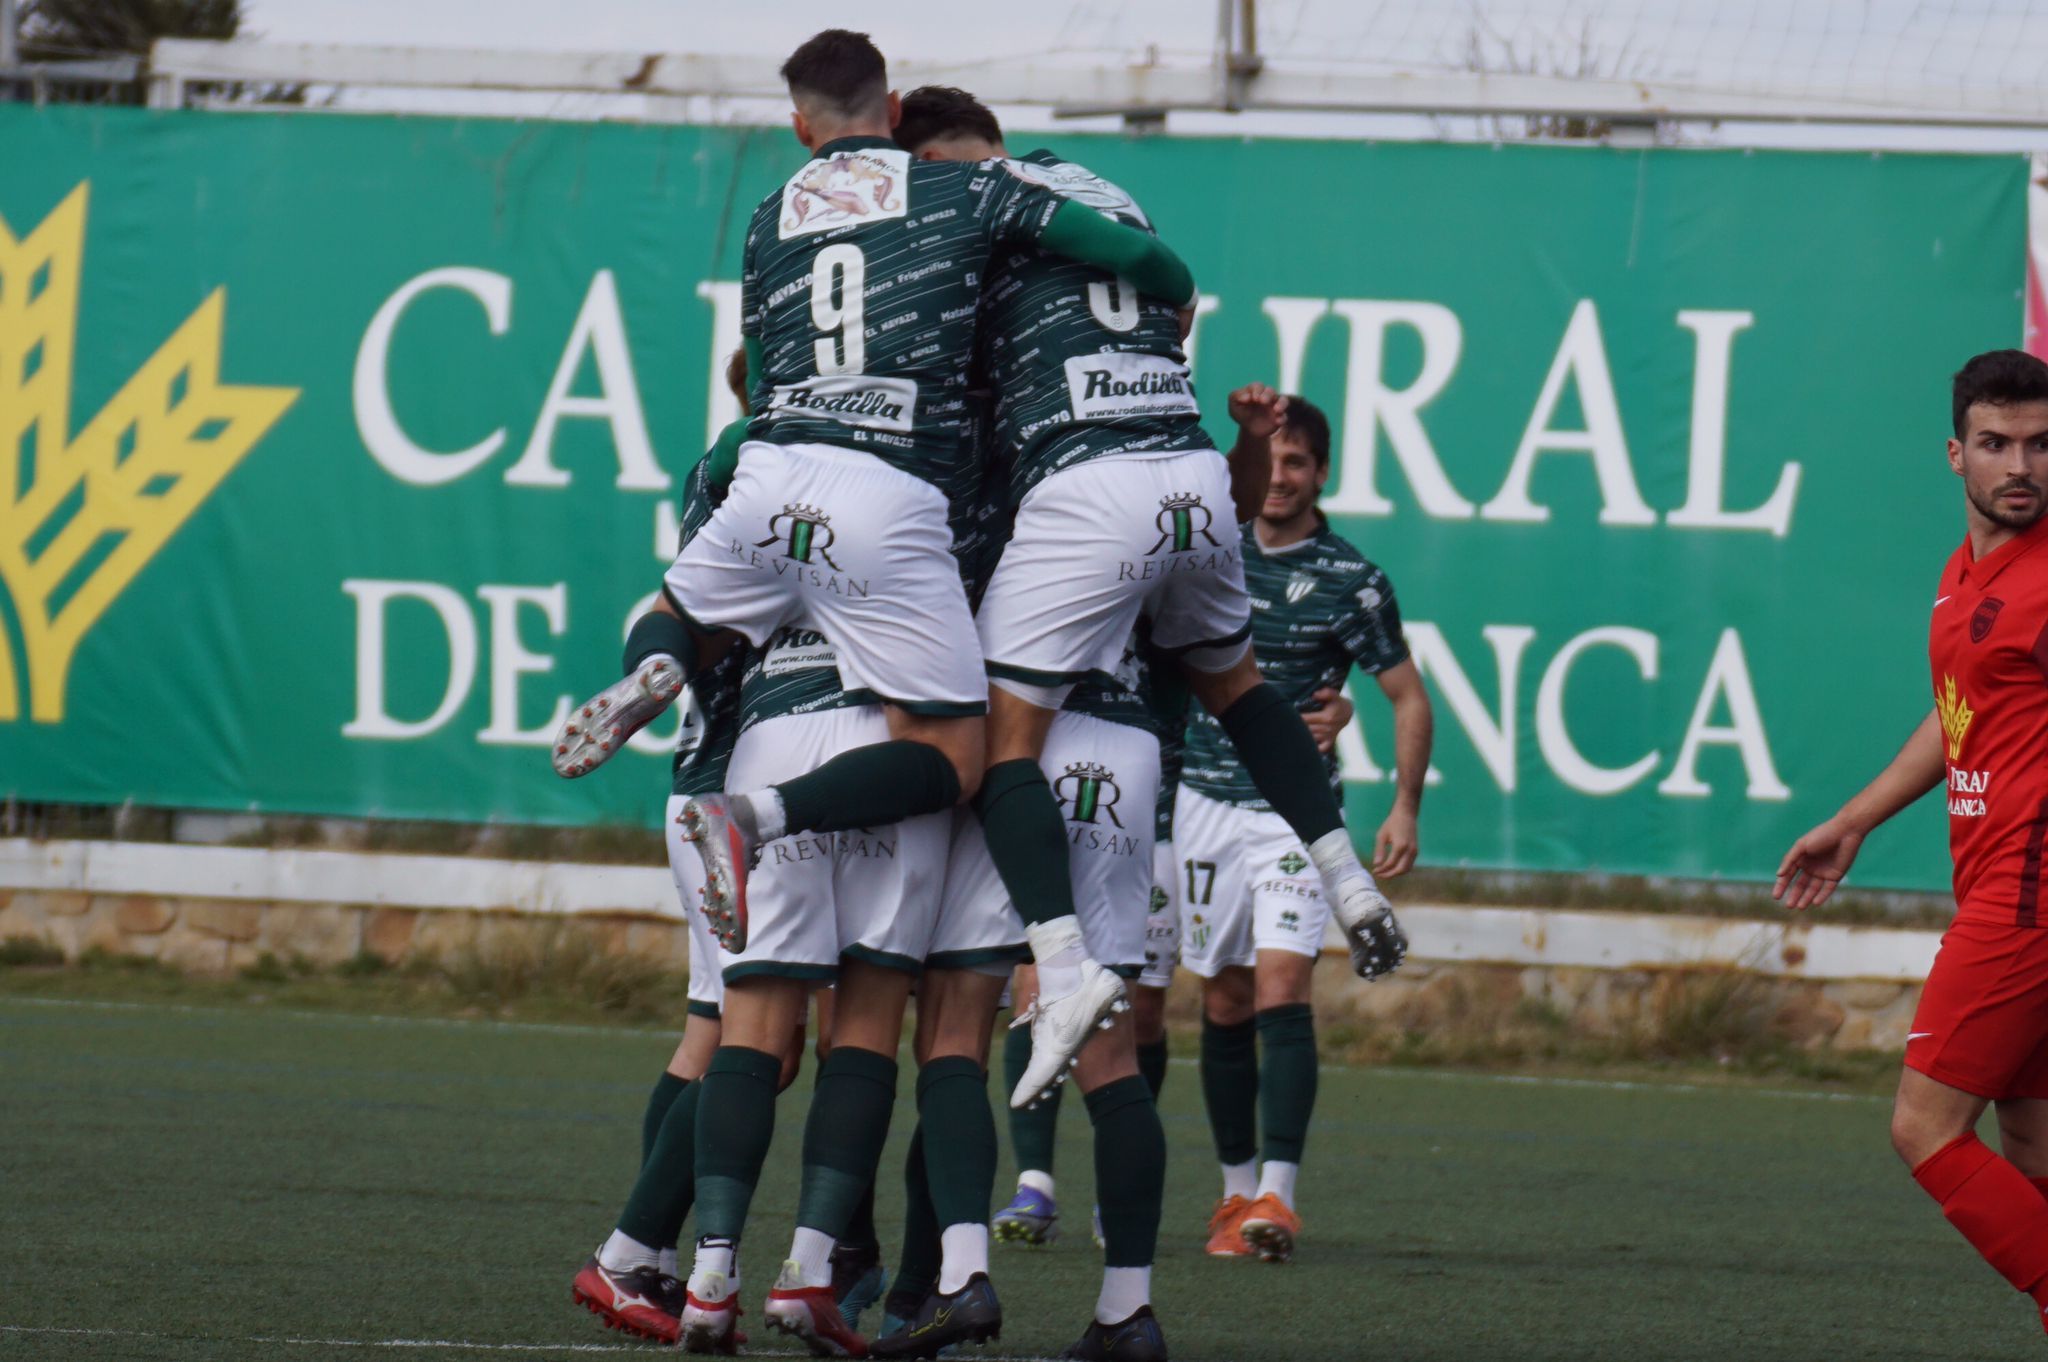 Celebración del gol del Guijuelo en el San Casto | Salamanca 24 Horas